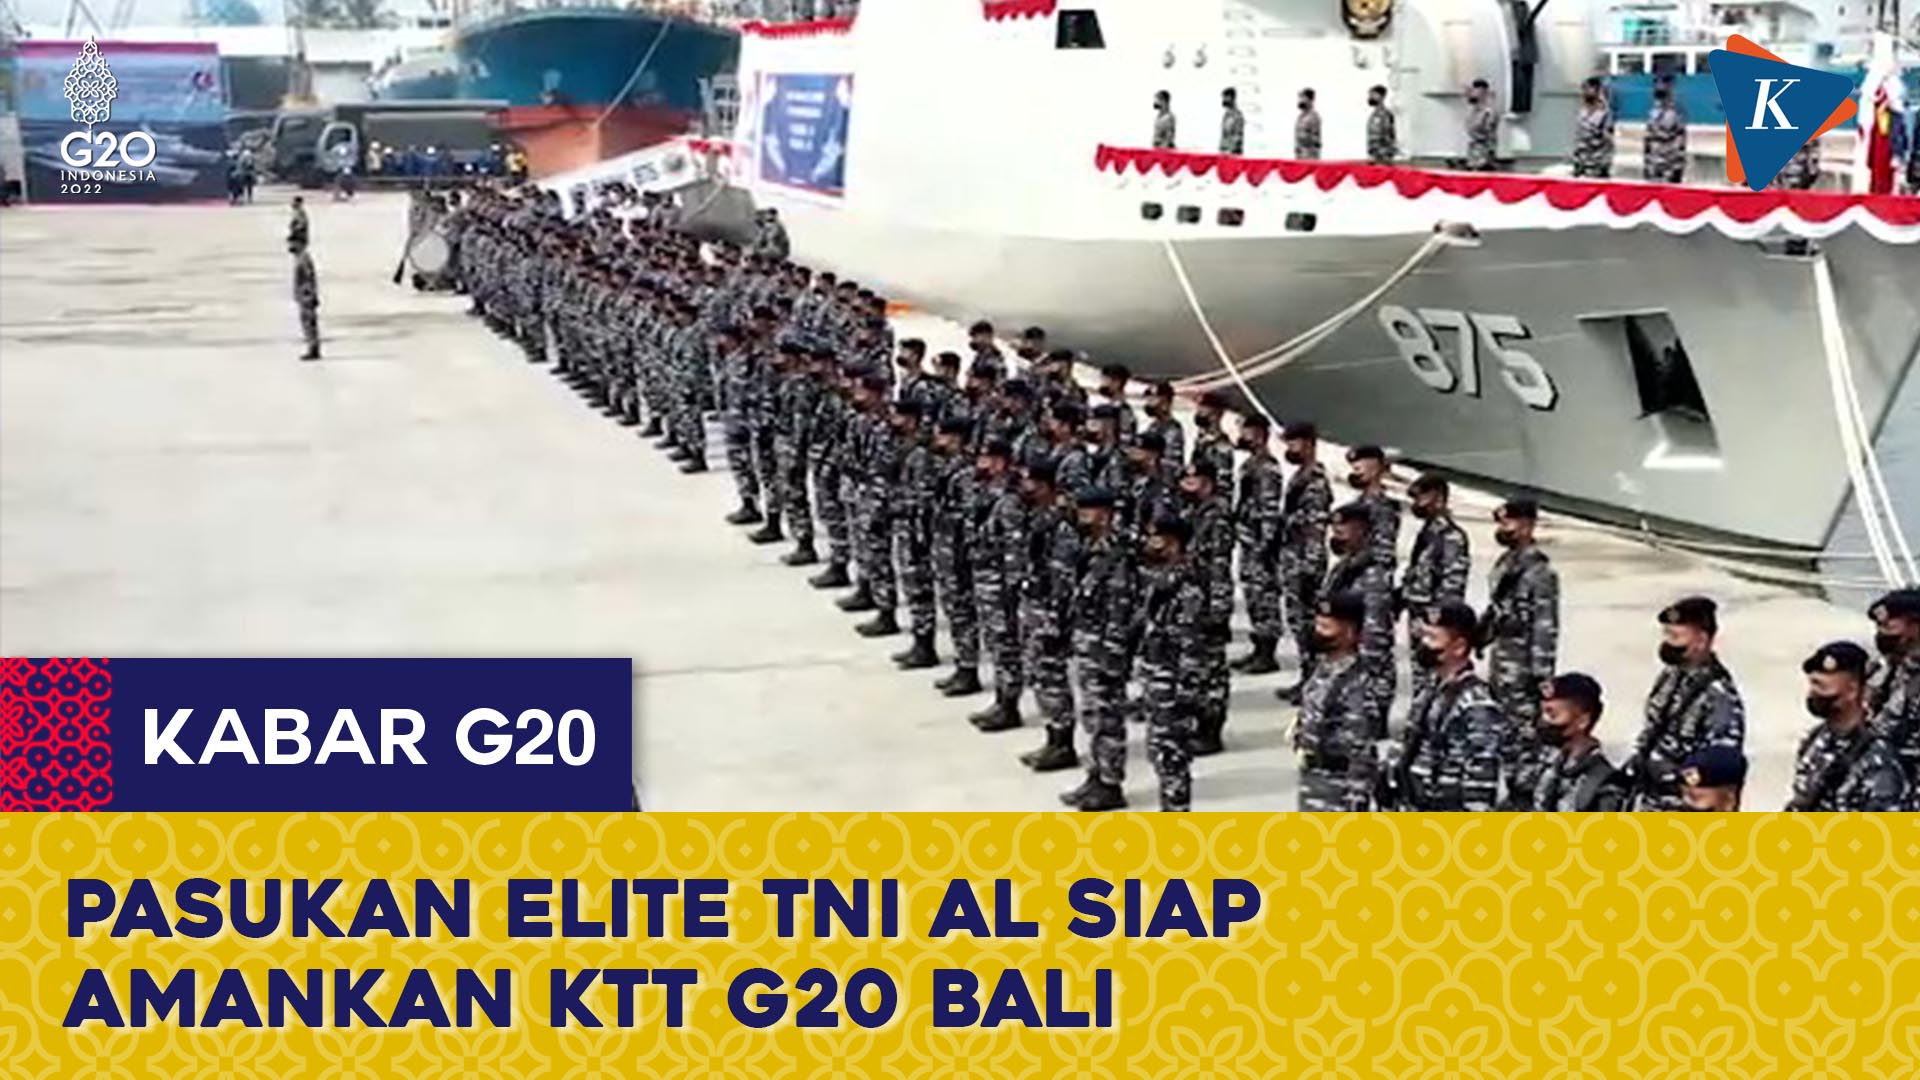 Pasukan Elite TNI AL Dikerahkan untuk Amankan KTT G20 Bali